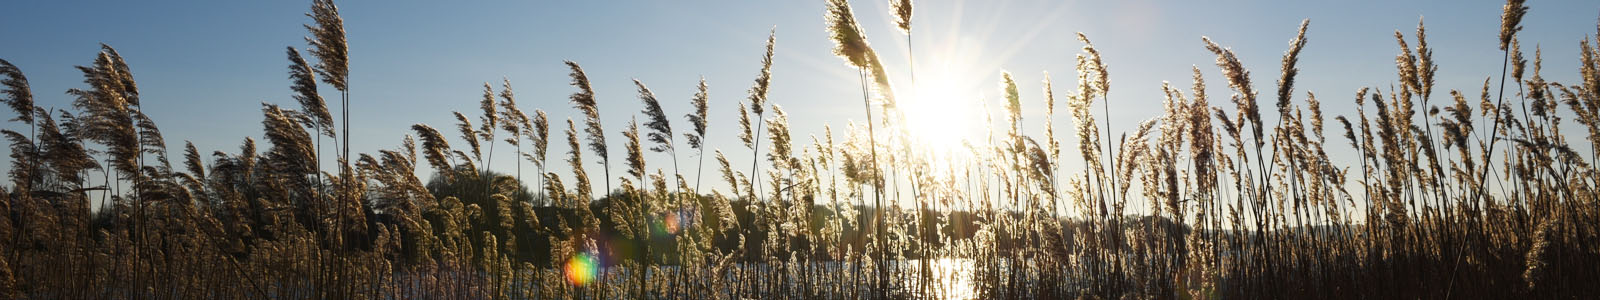 Gräserhalme mit Sonnenschein im Hintergrund ©DLR